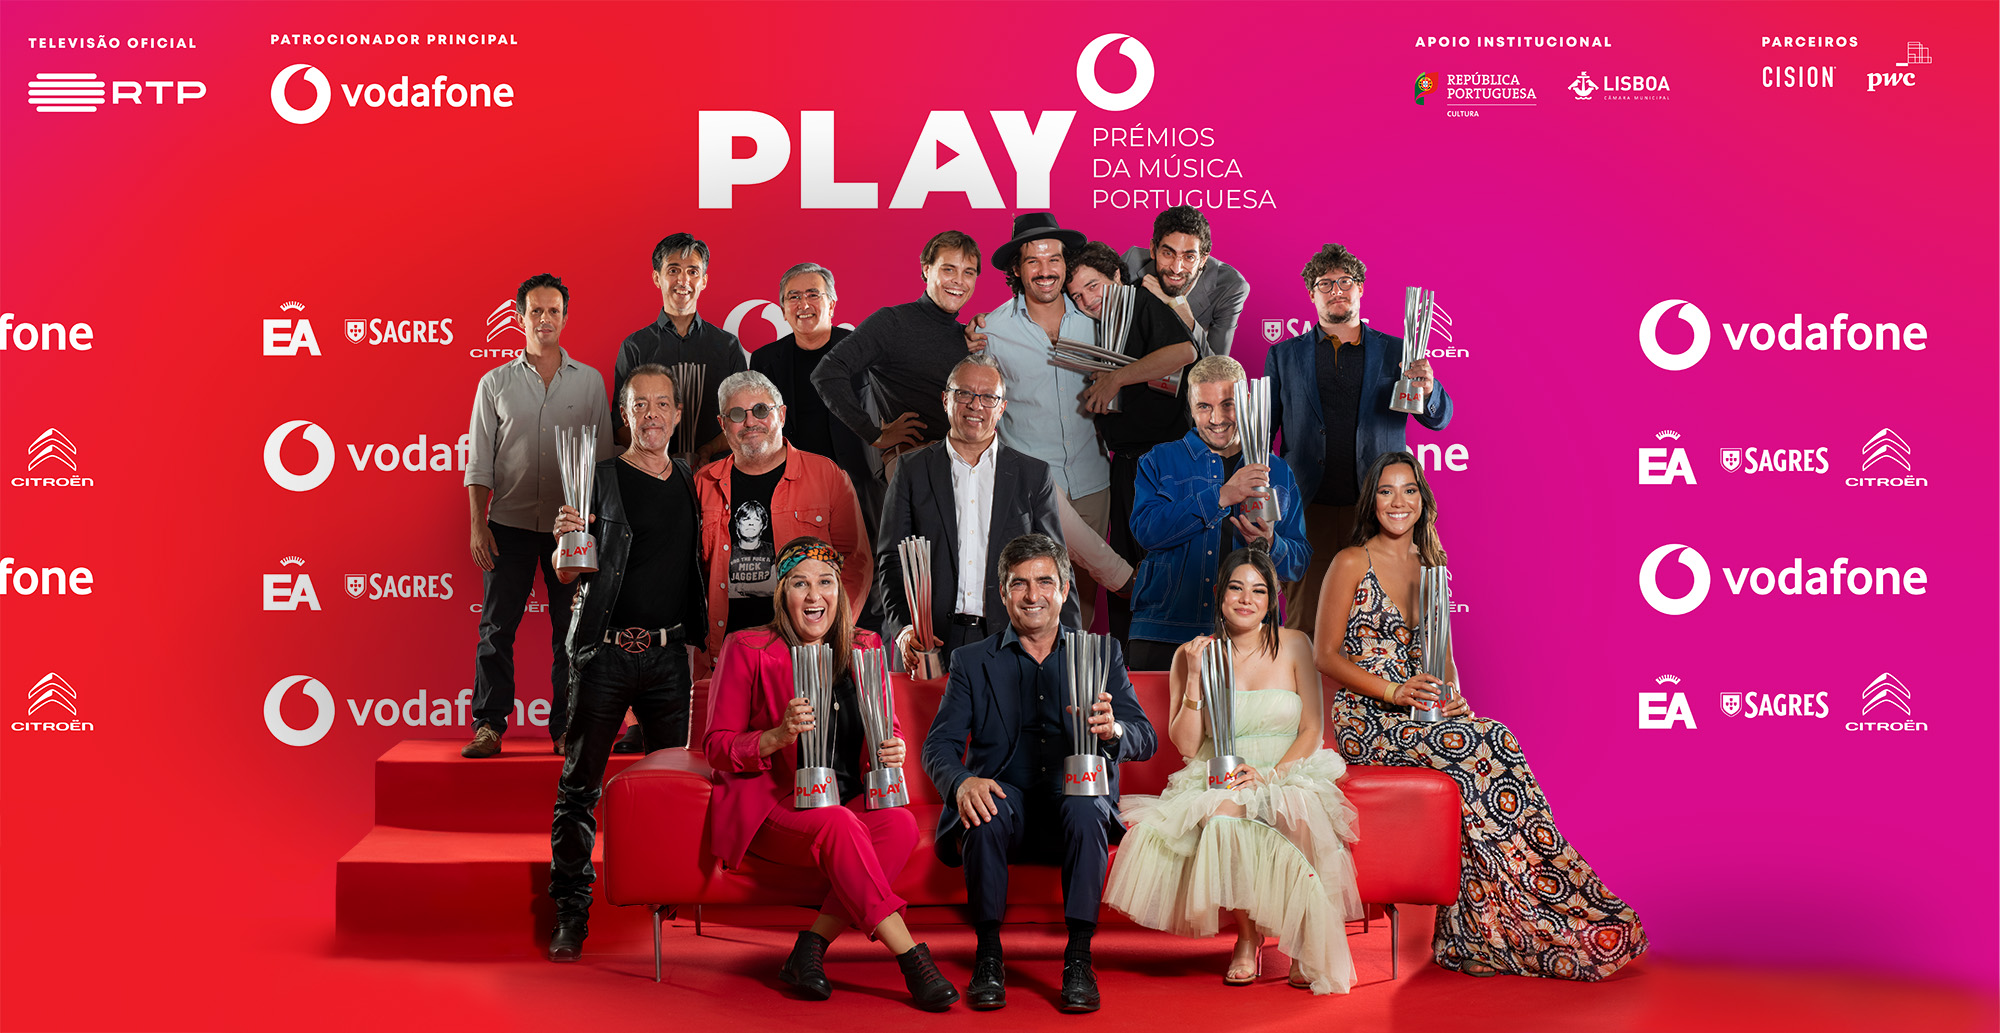 Play – Prémios da Música Portuguesa: uma noite de homenagem à música portuguesa e de apoio à Cultura